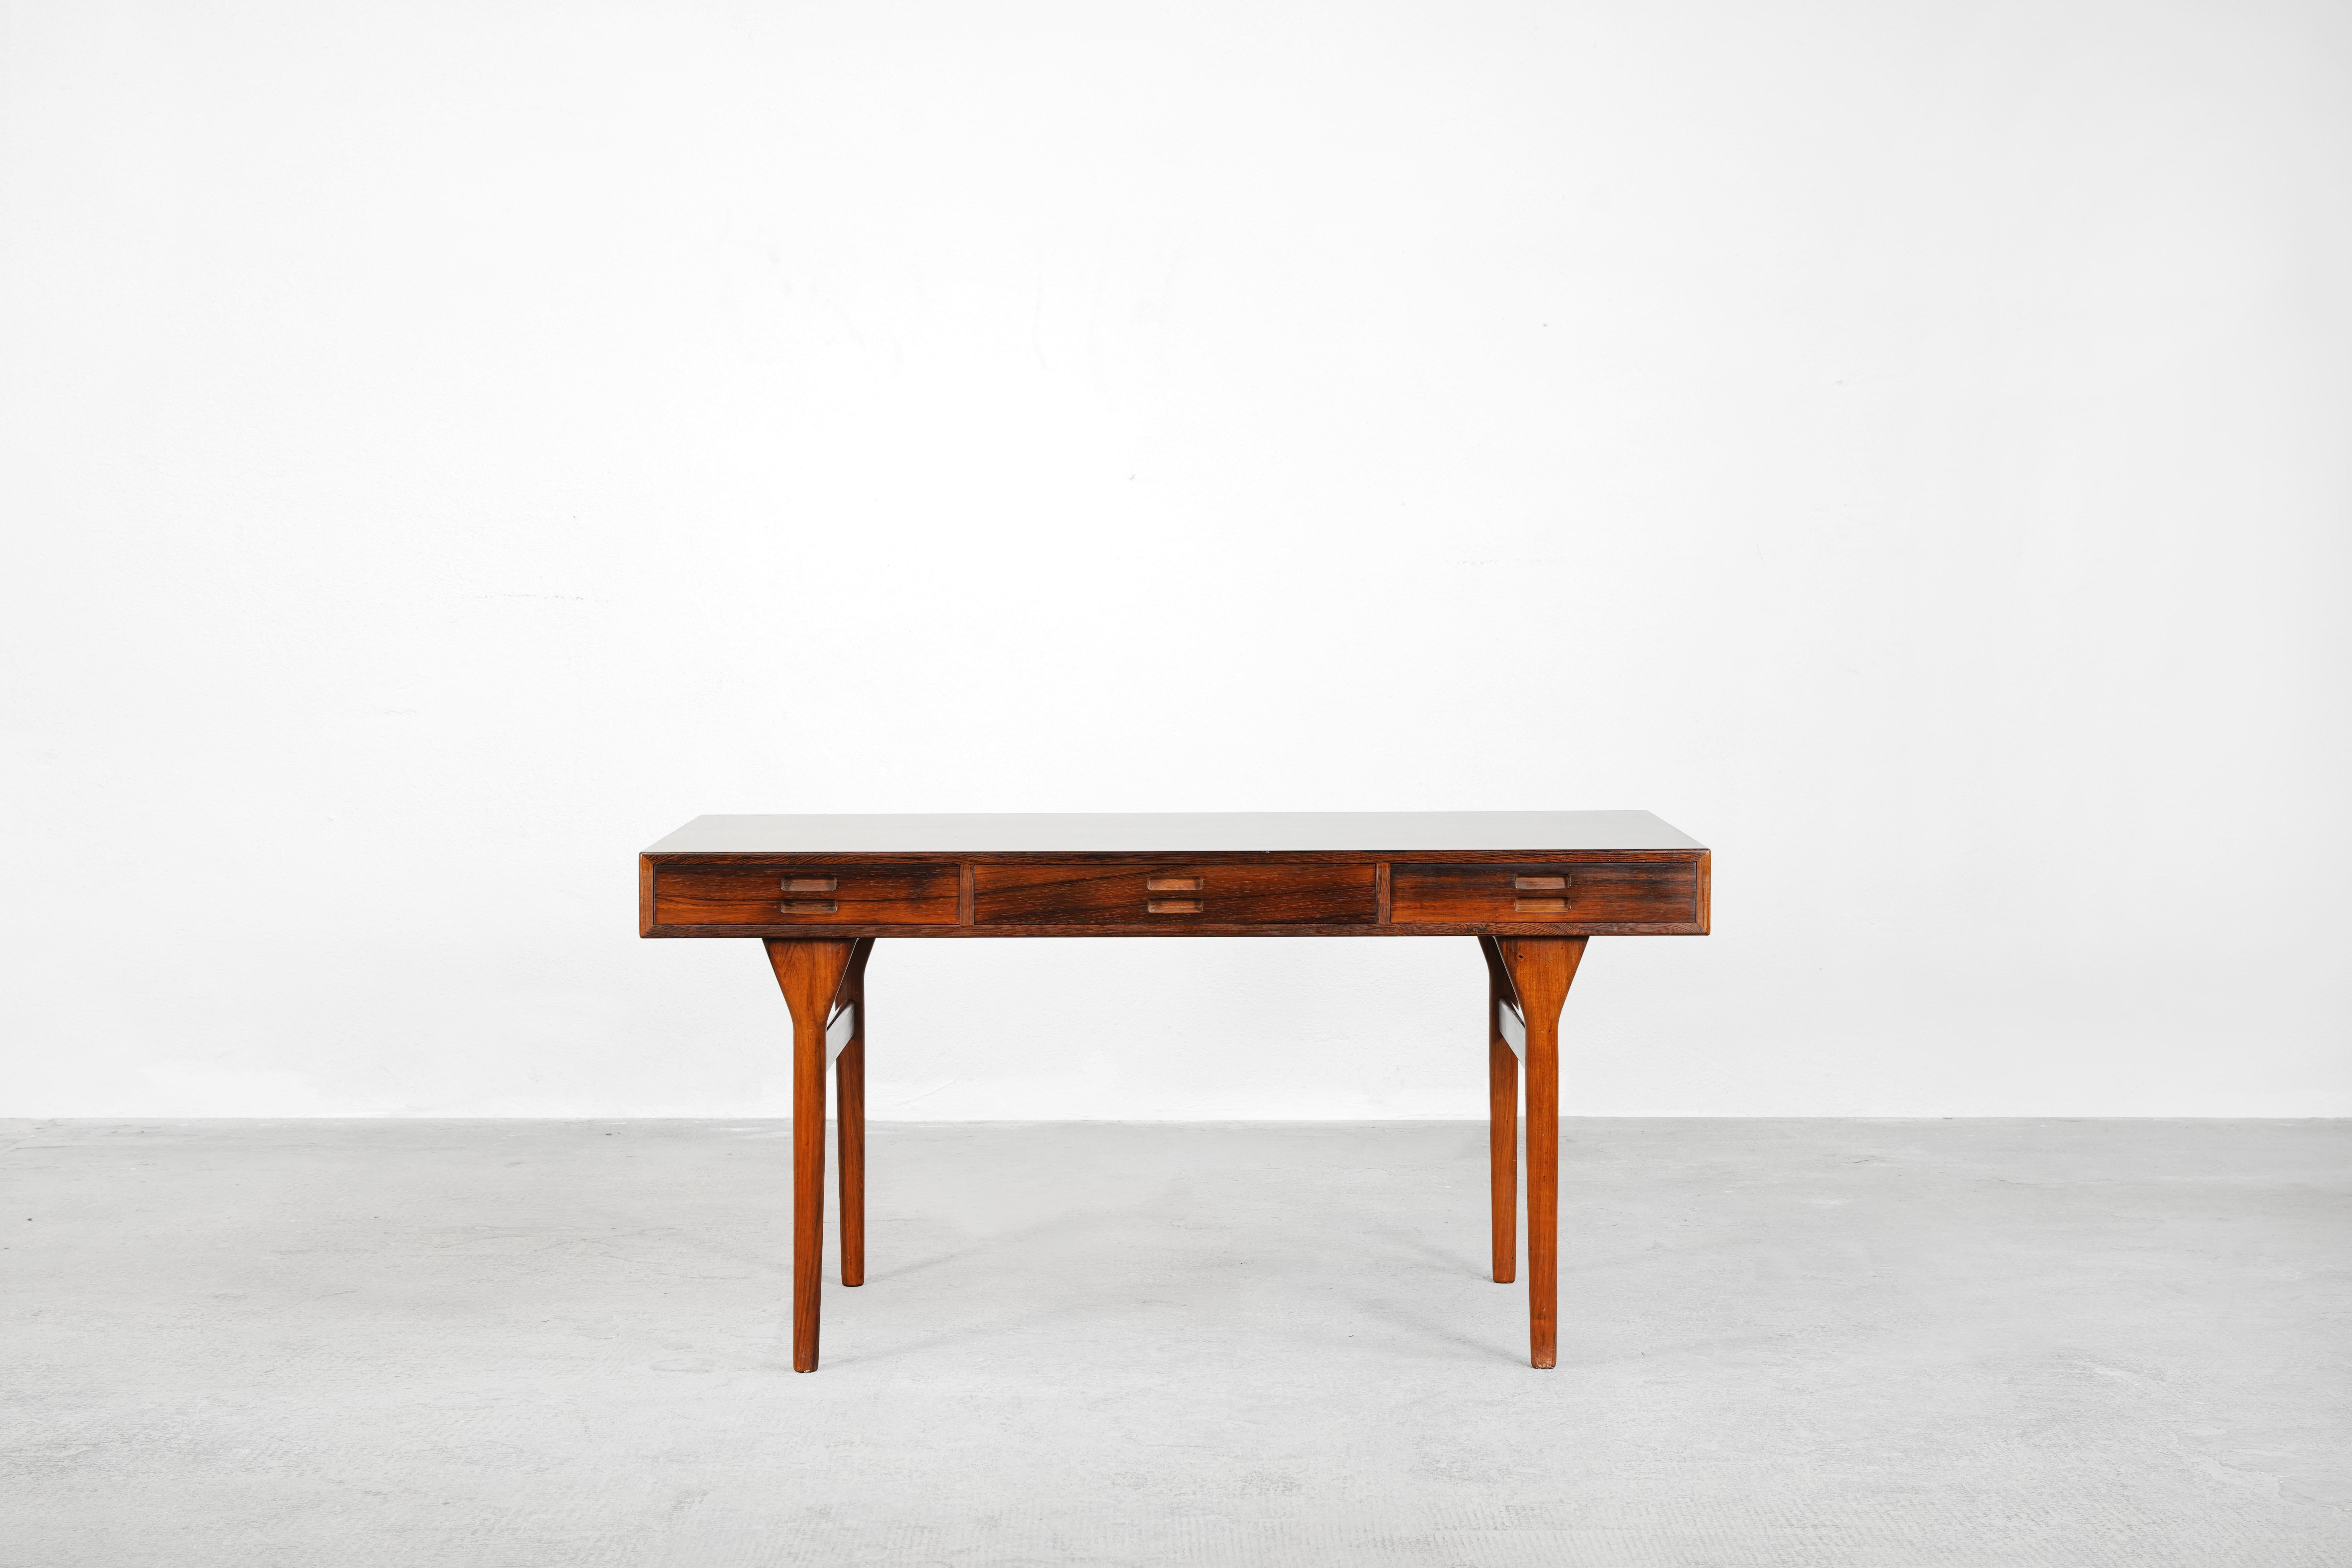 Sehr schöner Schreibtisch, entworfen von Nanna Ditzel für die Søren Willadsen Møbelfabrik, hergestellt in Dänemark im Jahr 1955. 
Der Schreibtisch befindet sich in einem sehr guten Zustand und ist sofort einsatzbereit.

 